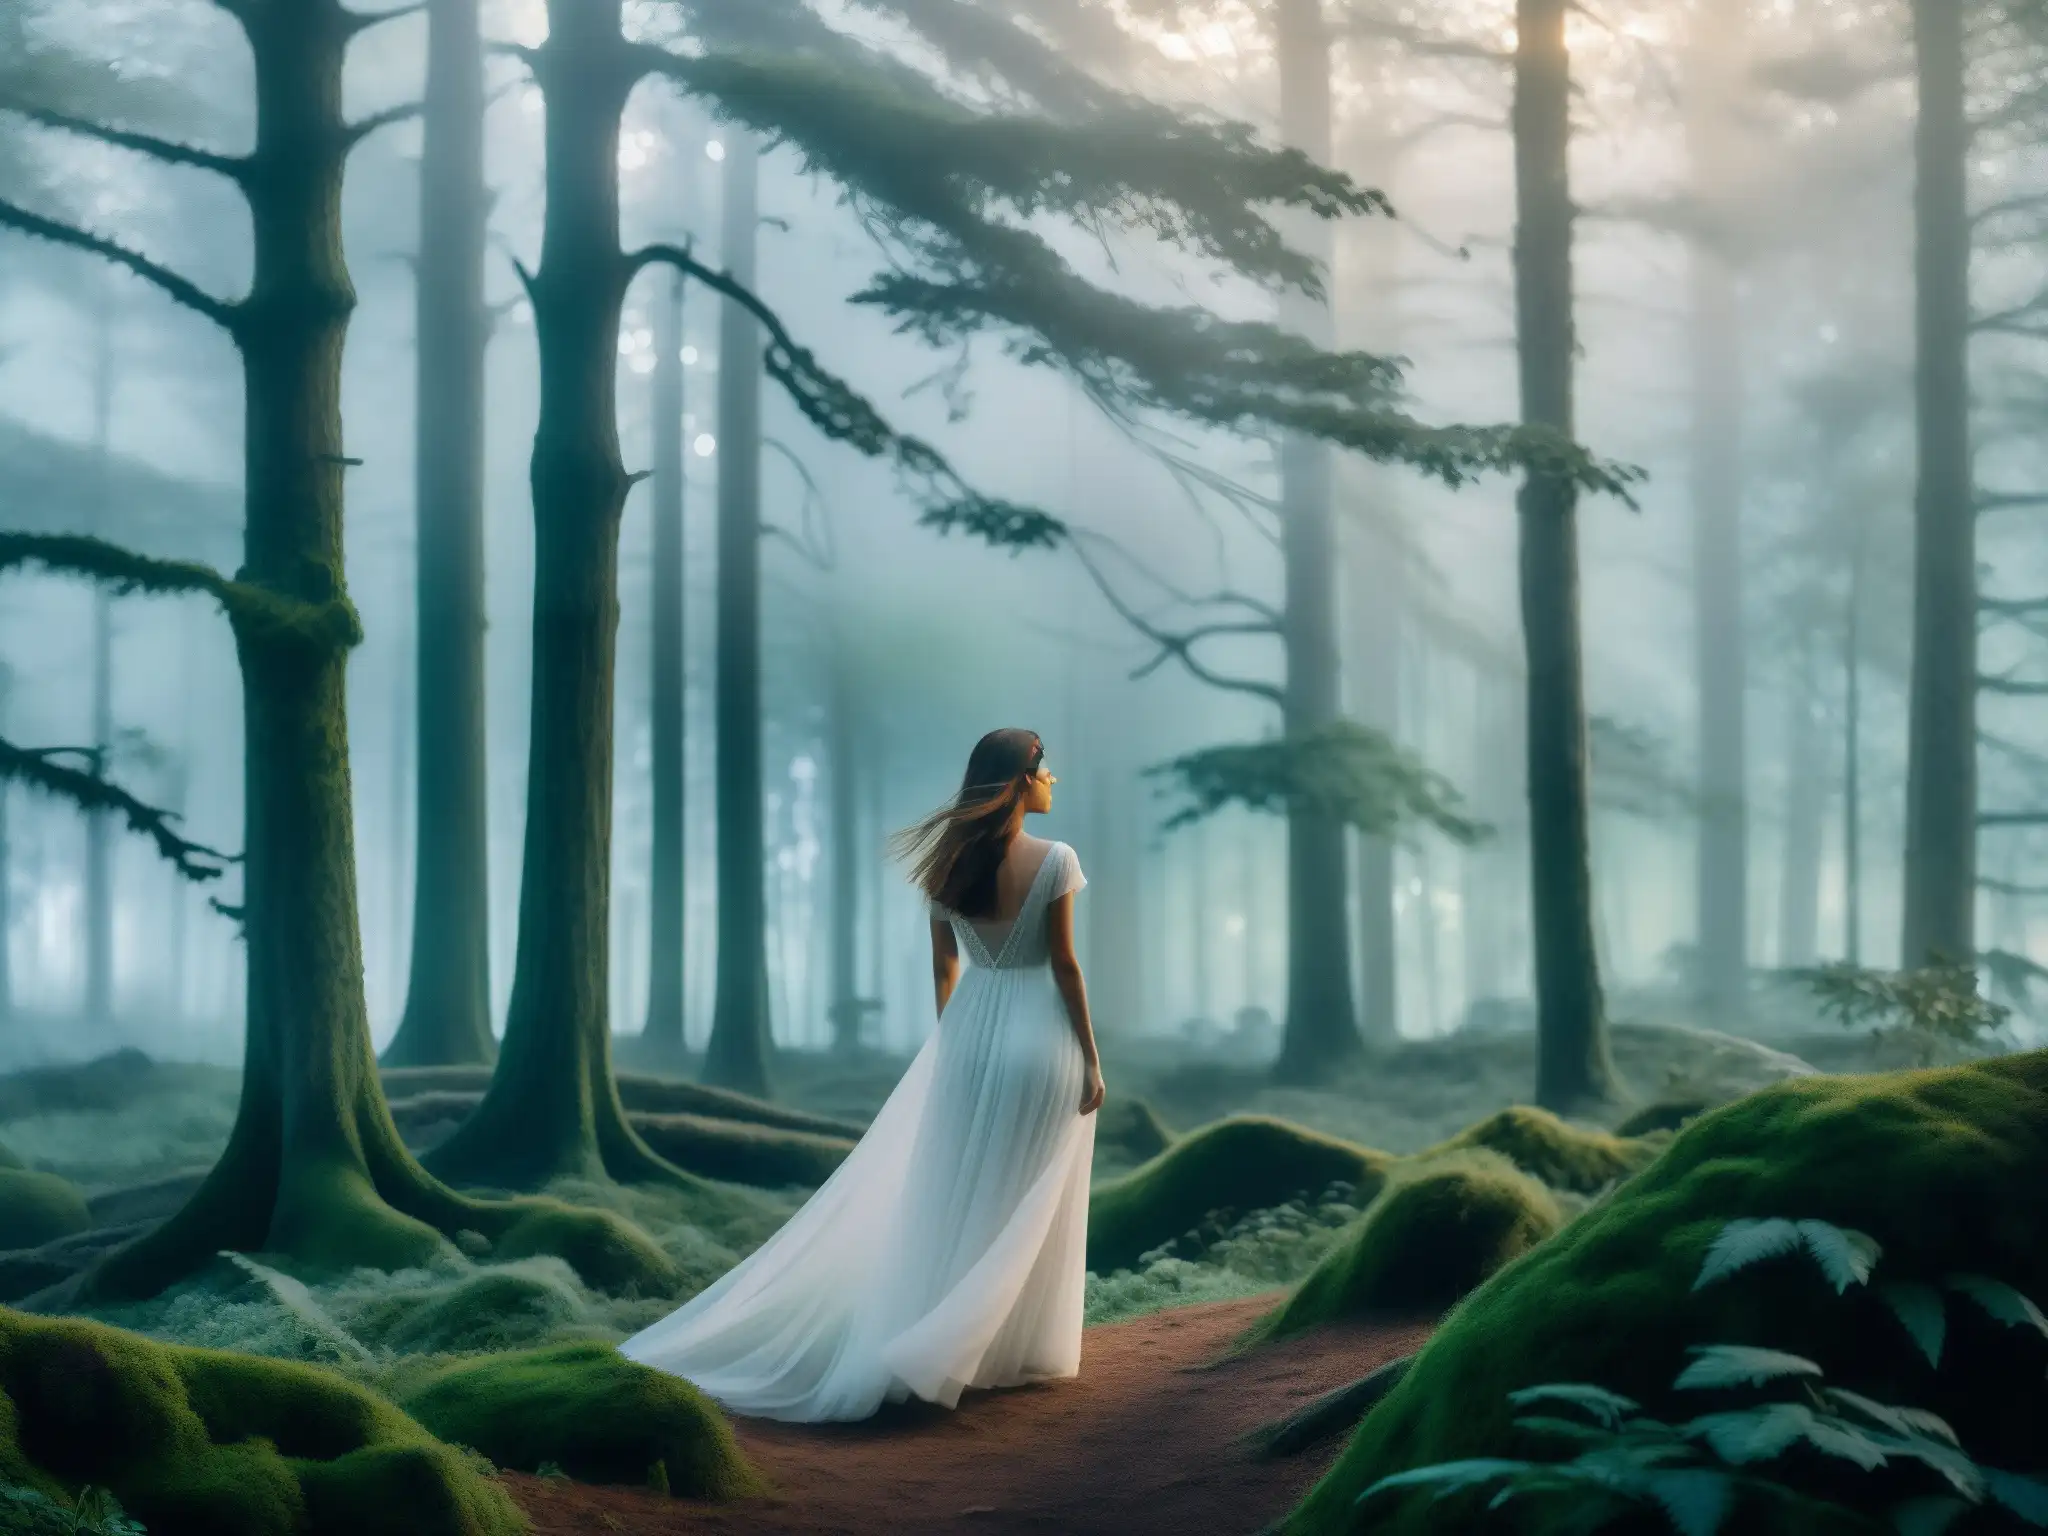 Imagen en blanco y negro de una misteriosa aparición de mujer en un bosque neblinoso al atardecer, evocando mitos y leyendas